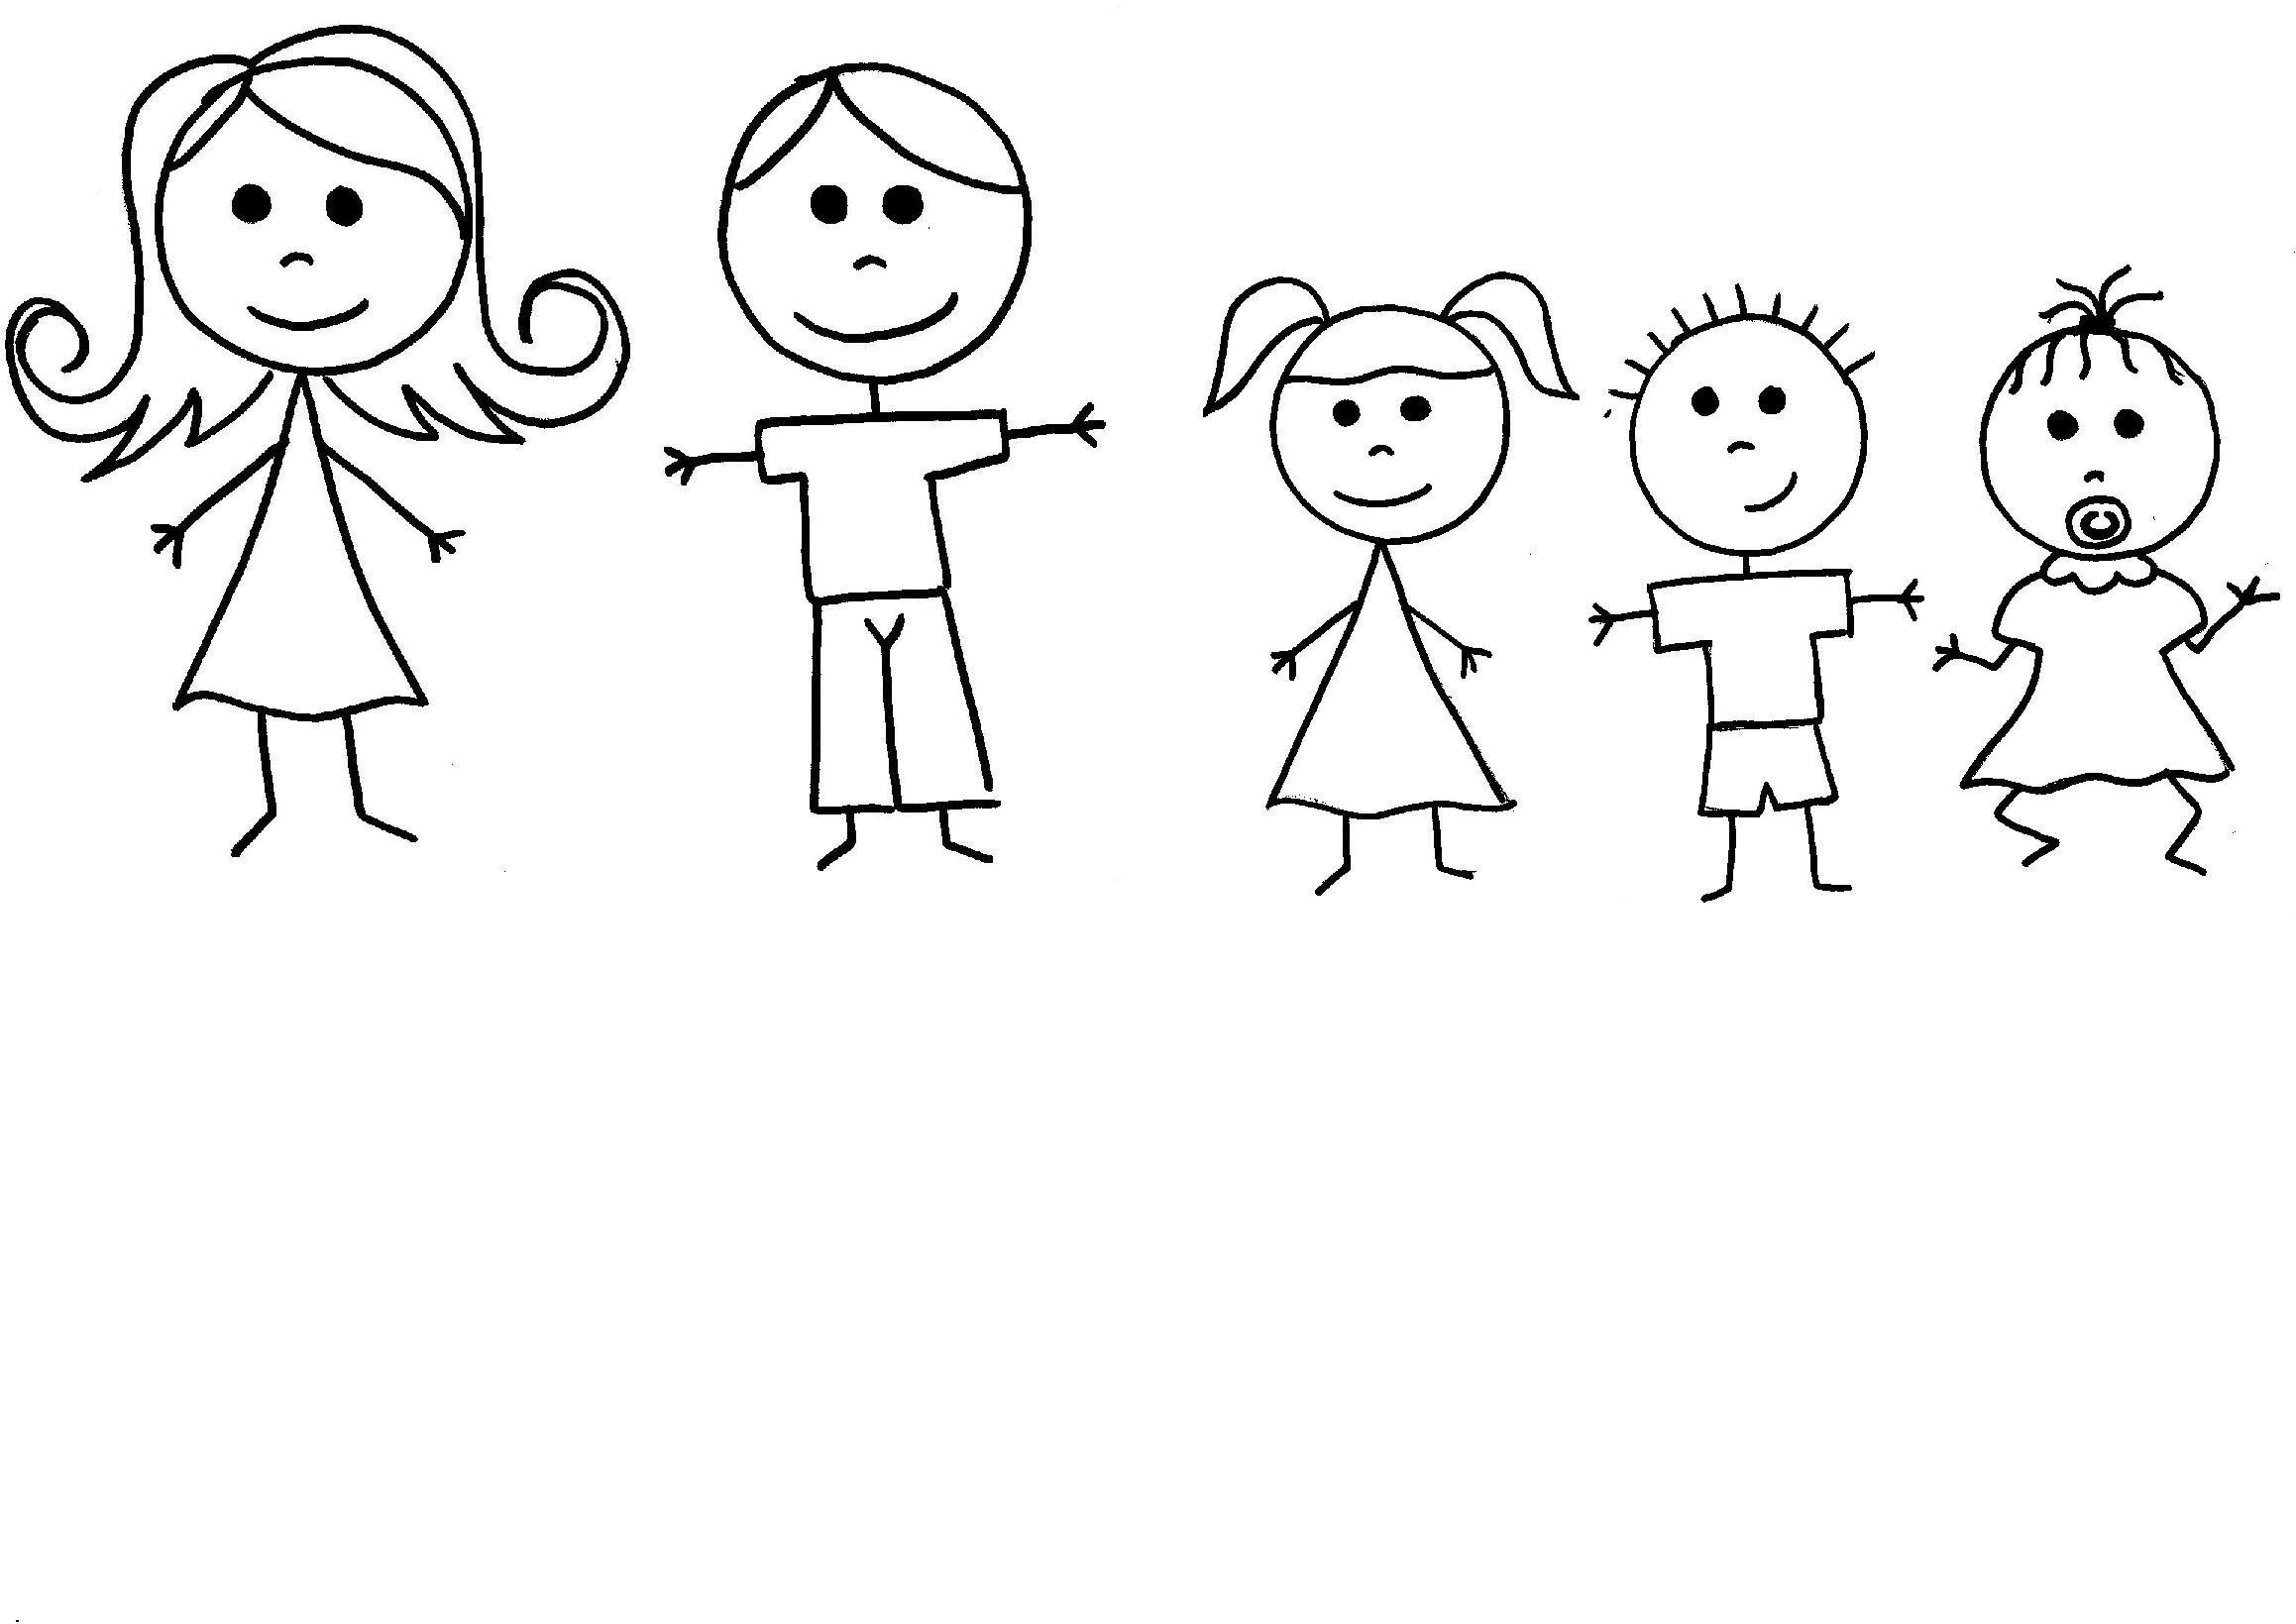 Нарисуй человечка 2. Человечек рисунок. Человечек рисунок для детей. Человечки для рисования. Веселые человечки картинки для детей.